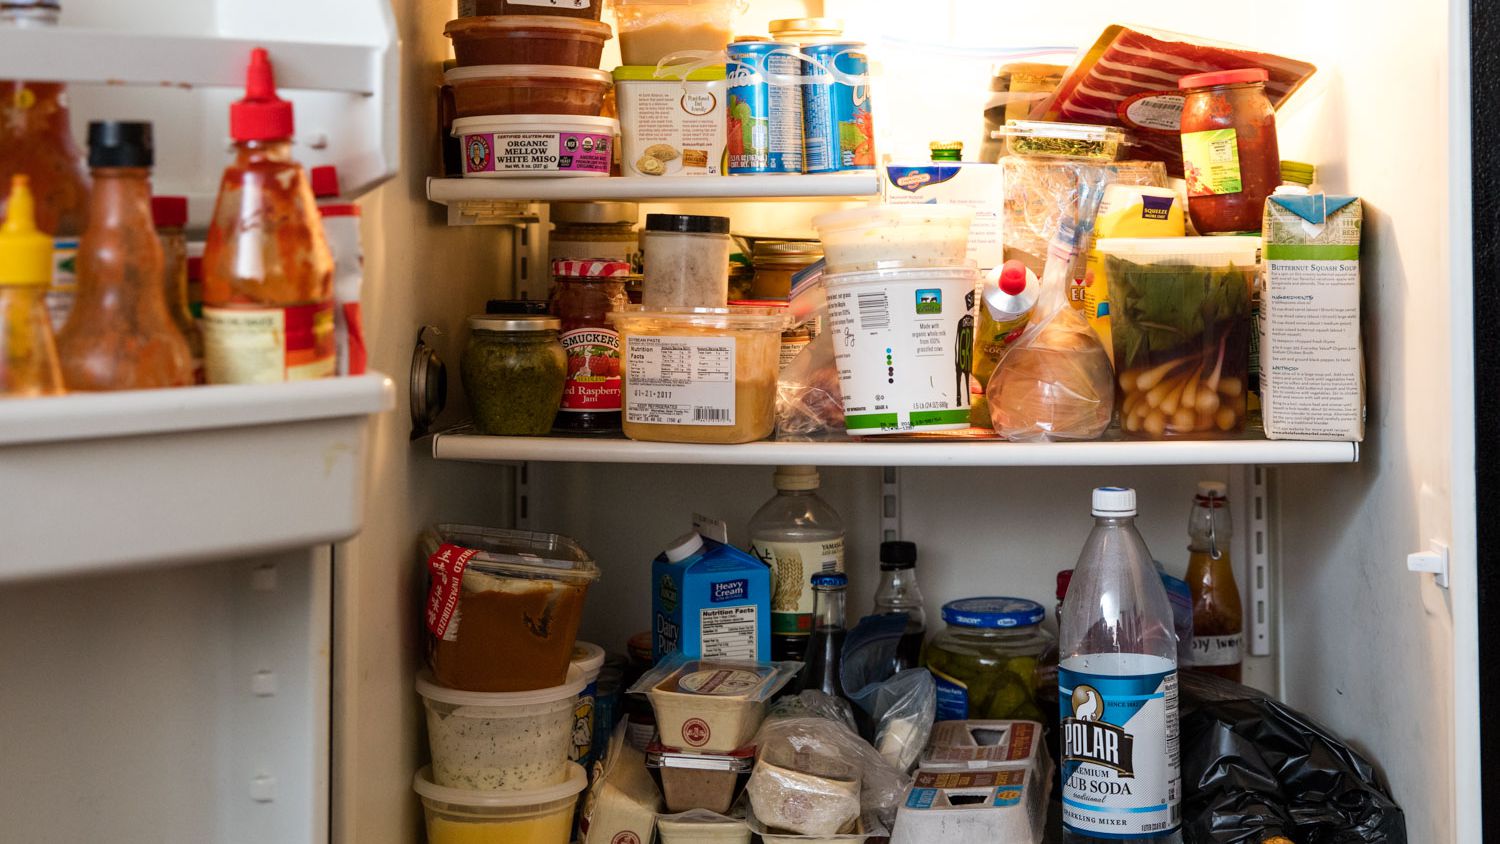 6 điều bạn không bao giờ nên làm khi vệ sinh tủ lạnh - Ảnh 1.